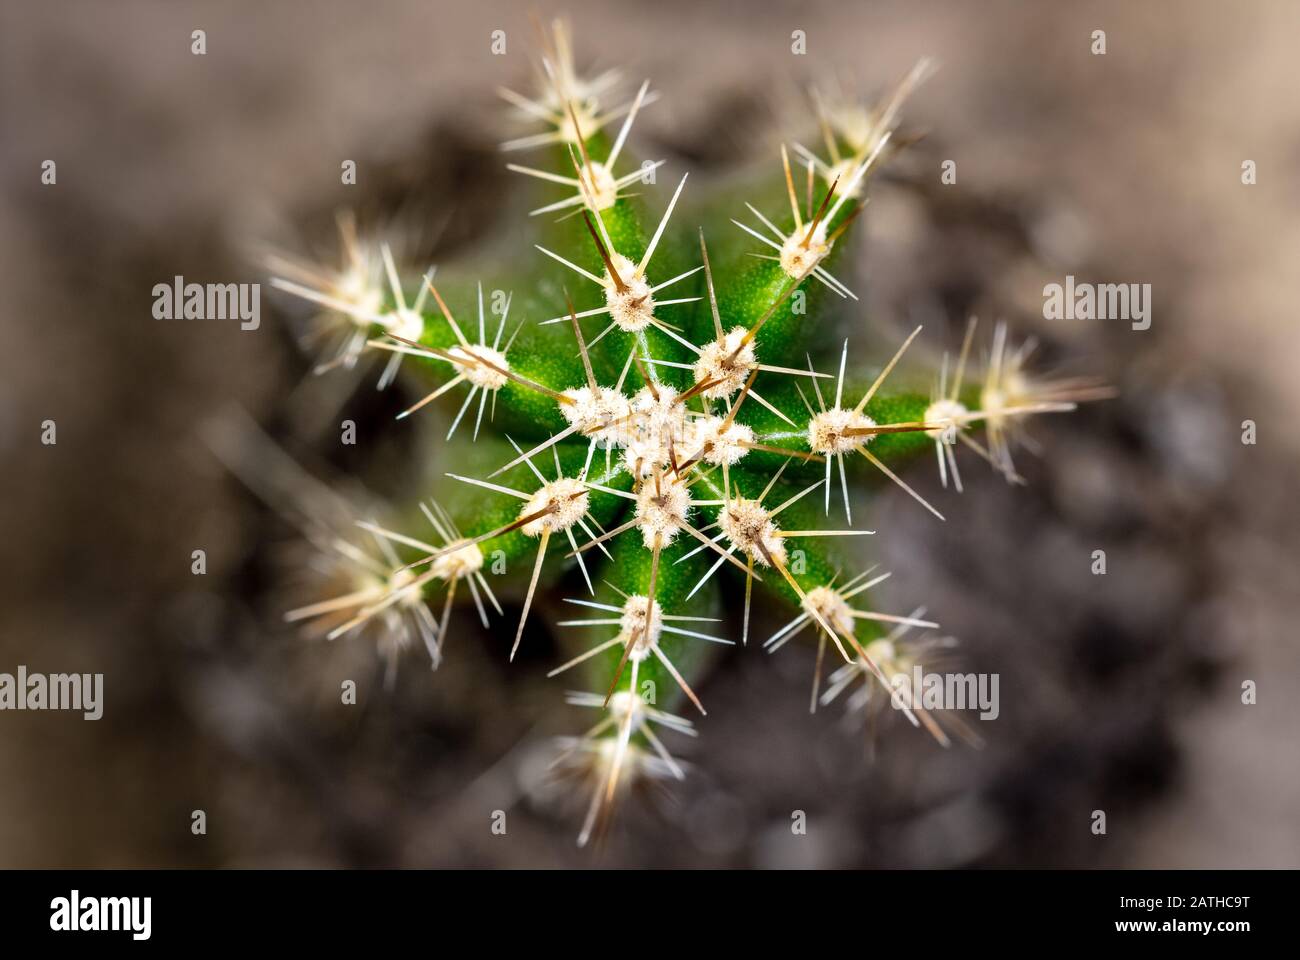 Topview du cactus de la pomme péruvienne cactus ou Cereus repandus, closeup, fond brun Banque D'Images